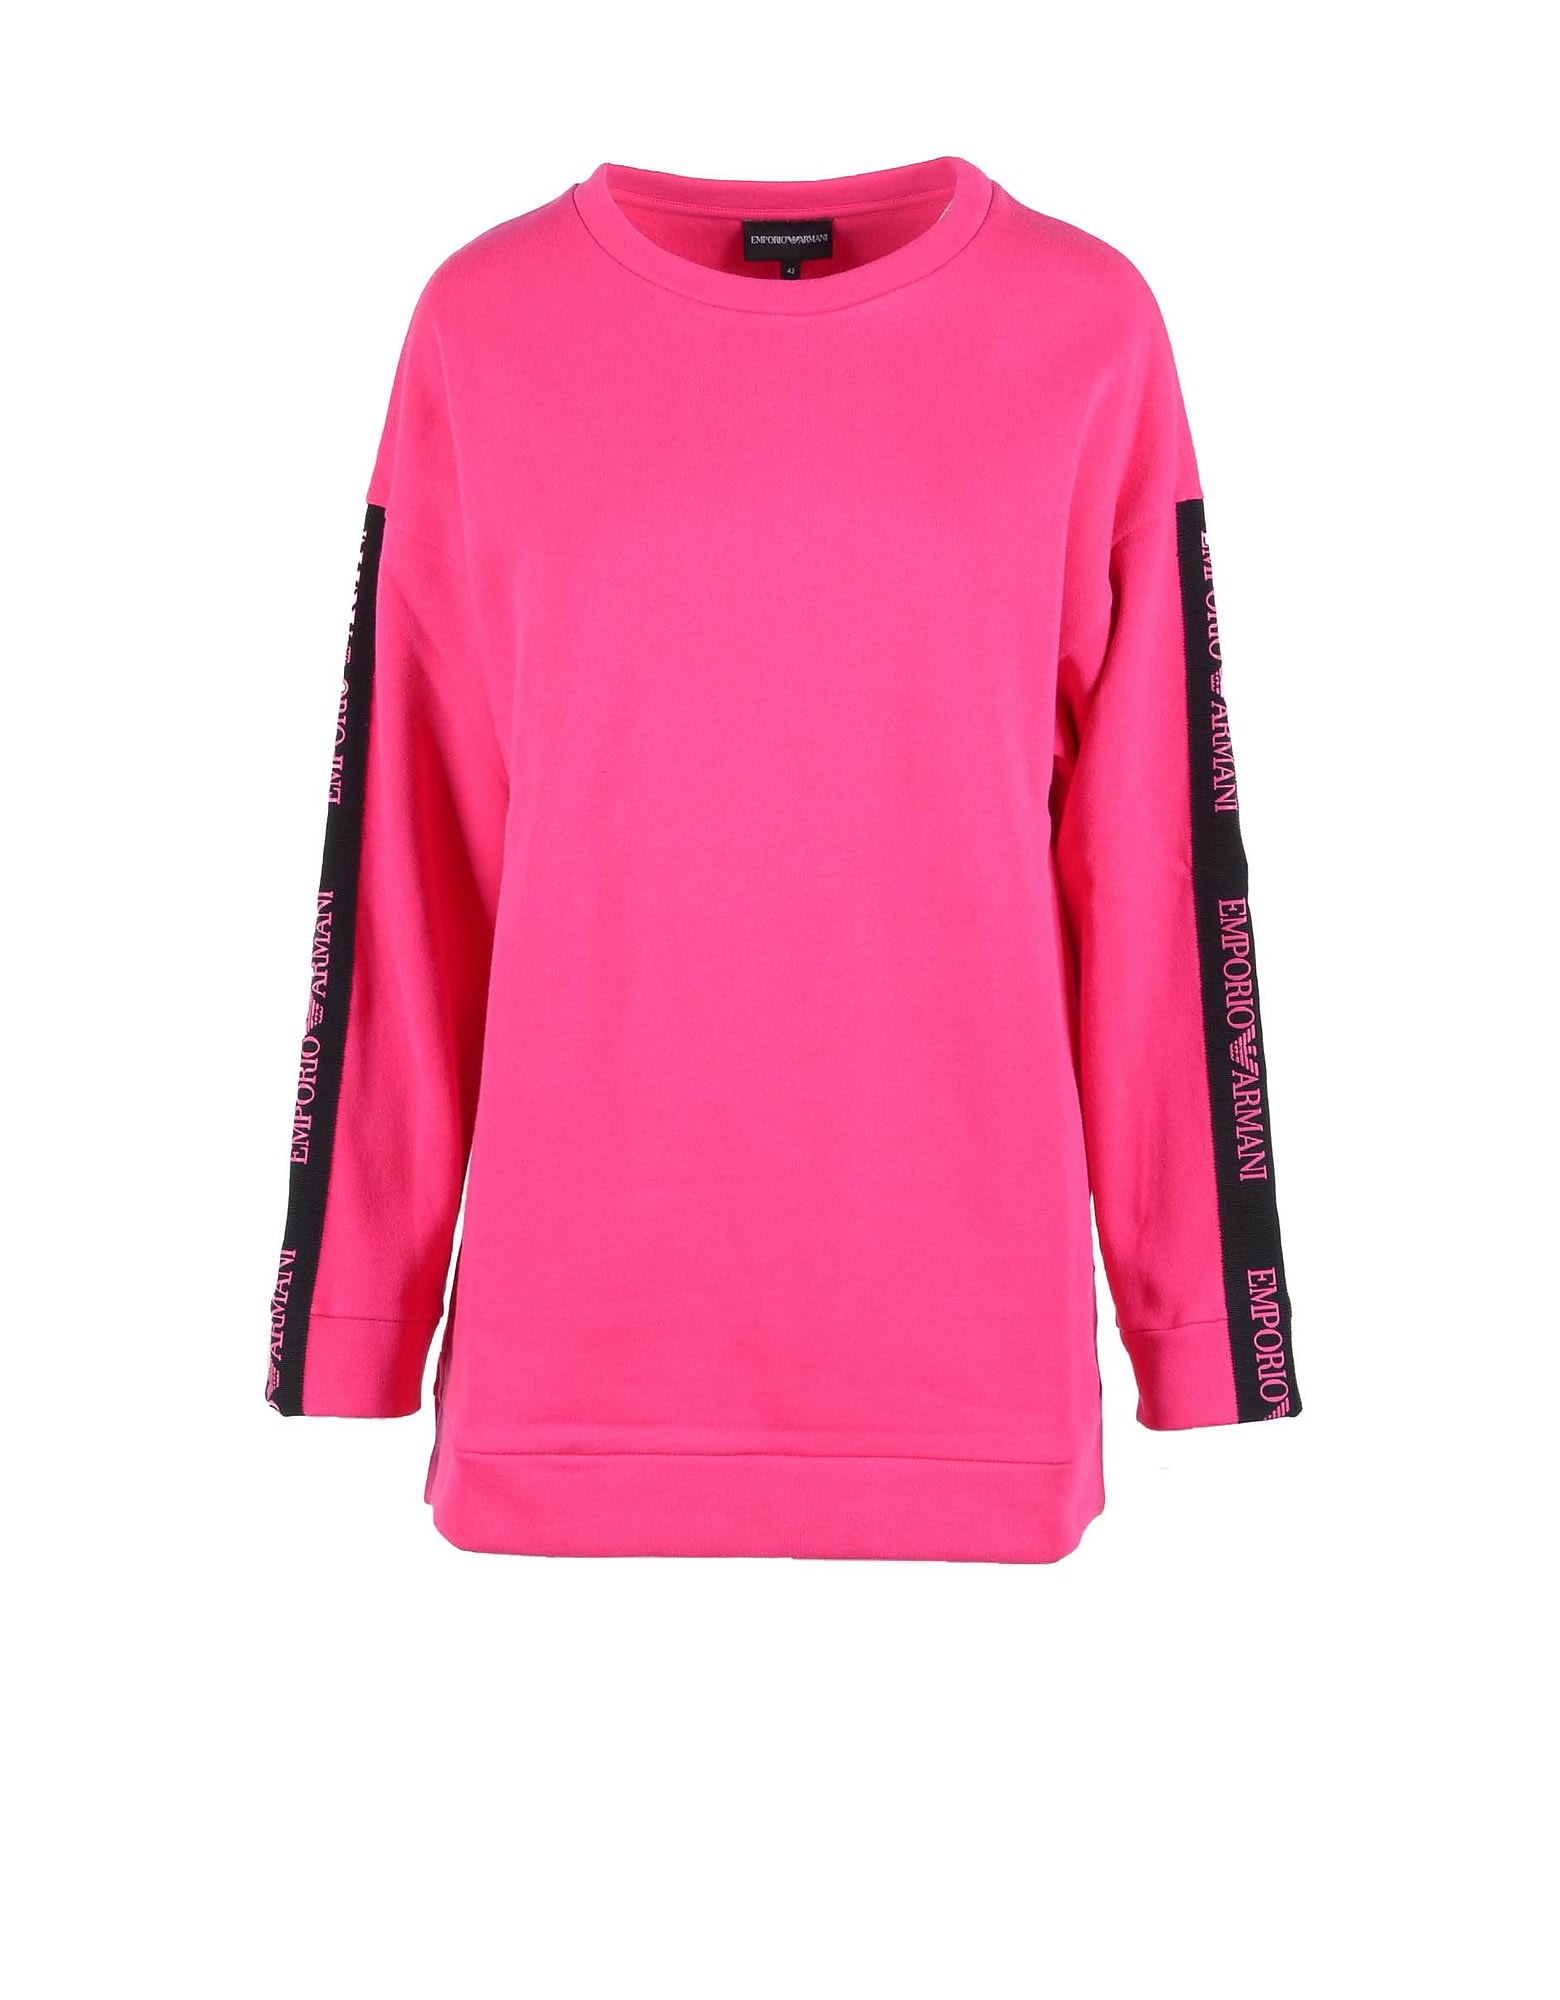 Emporio Armani Womens Fuchsia Sweatshirt